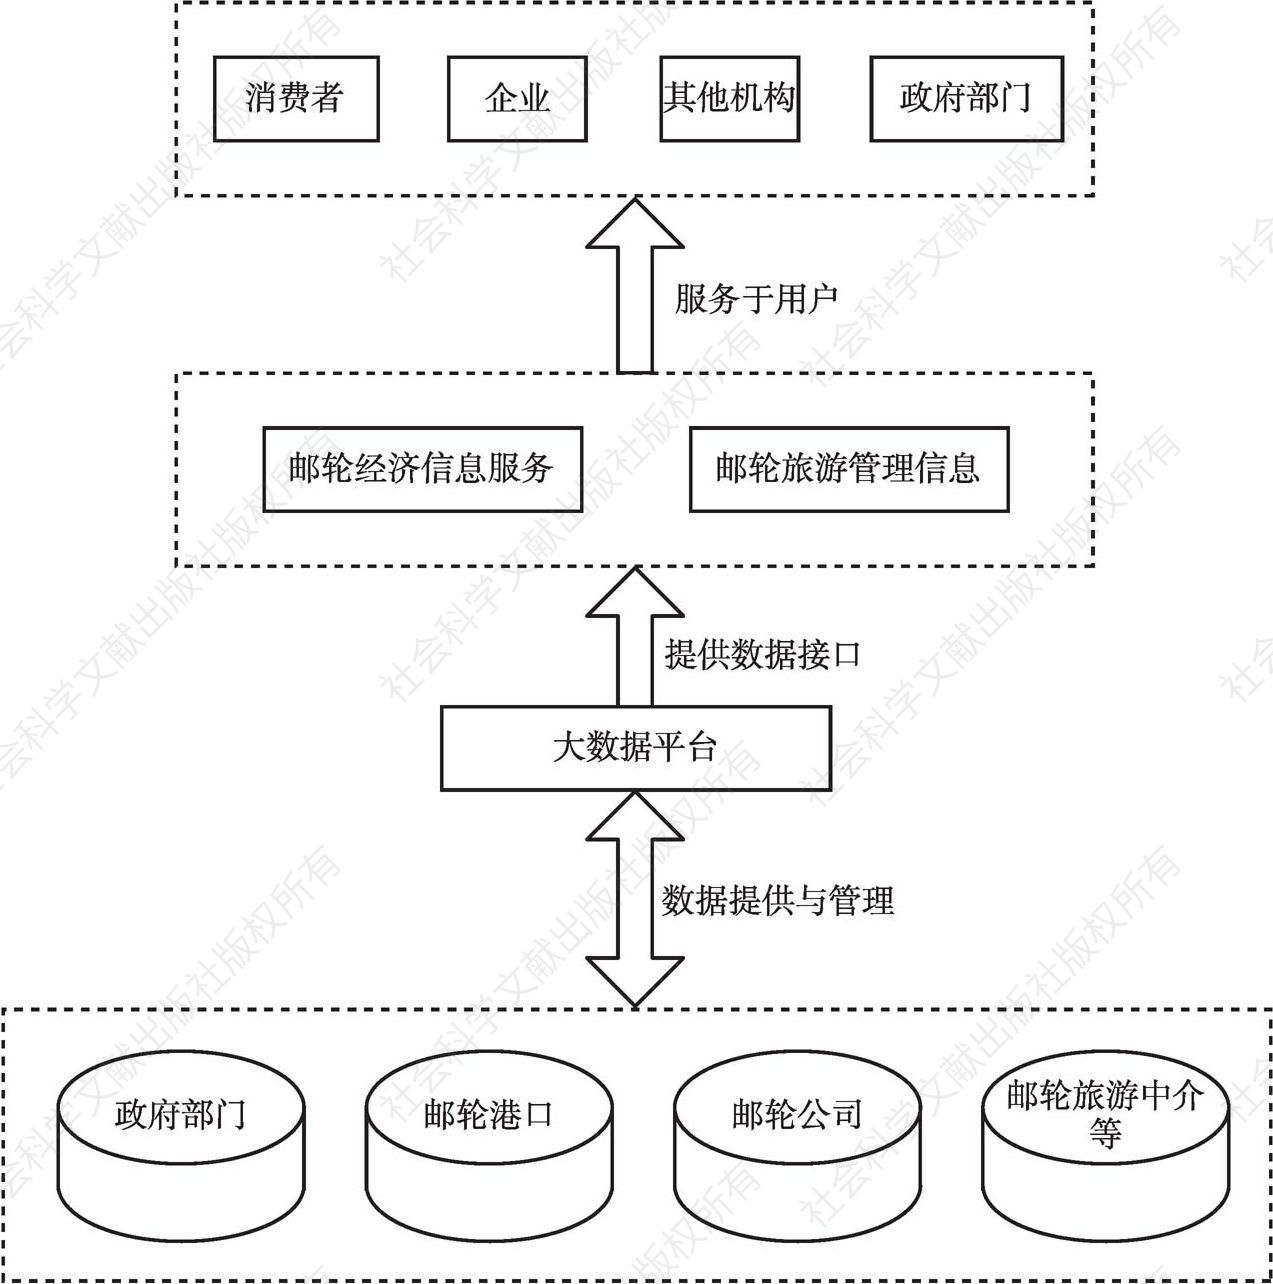 图4 邮轮经济动态信息应用系统架构